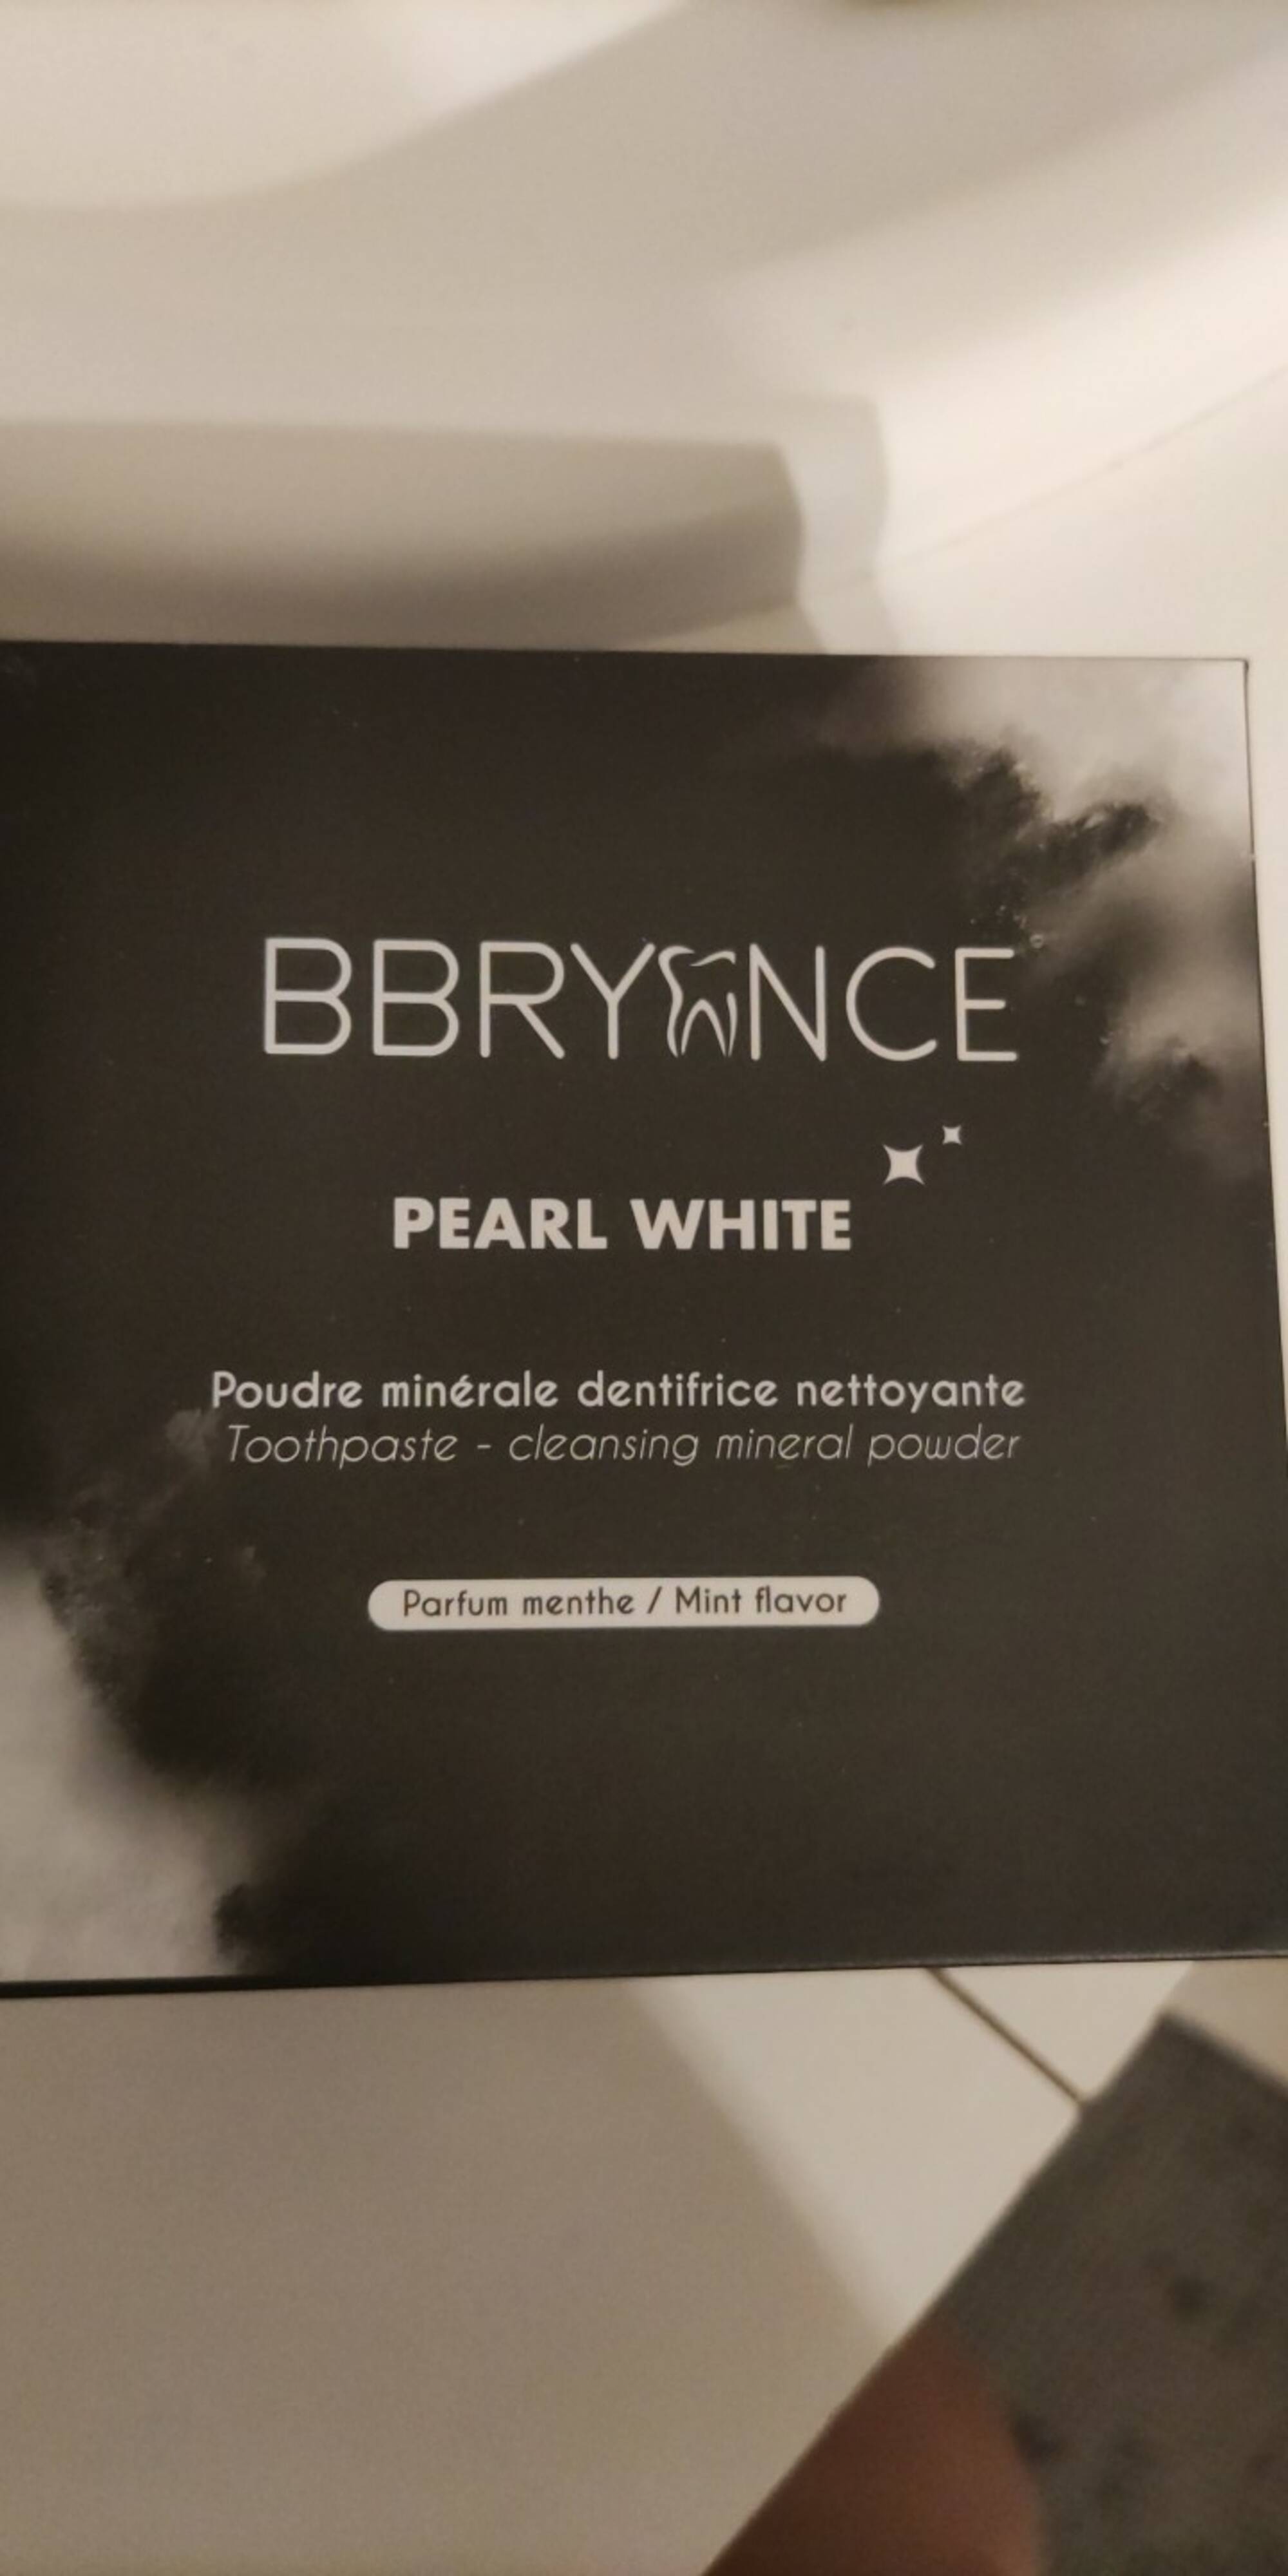 BBRYANCE - Pearl white - Poudre minérale dentifrice nettoyante